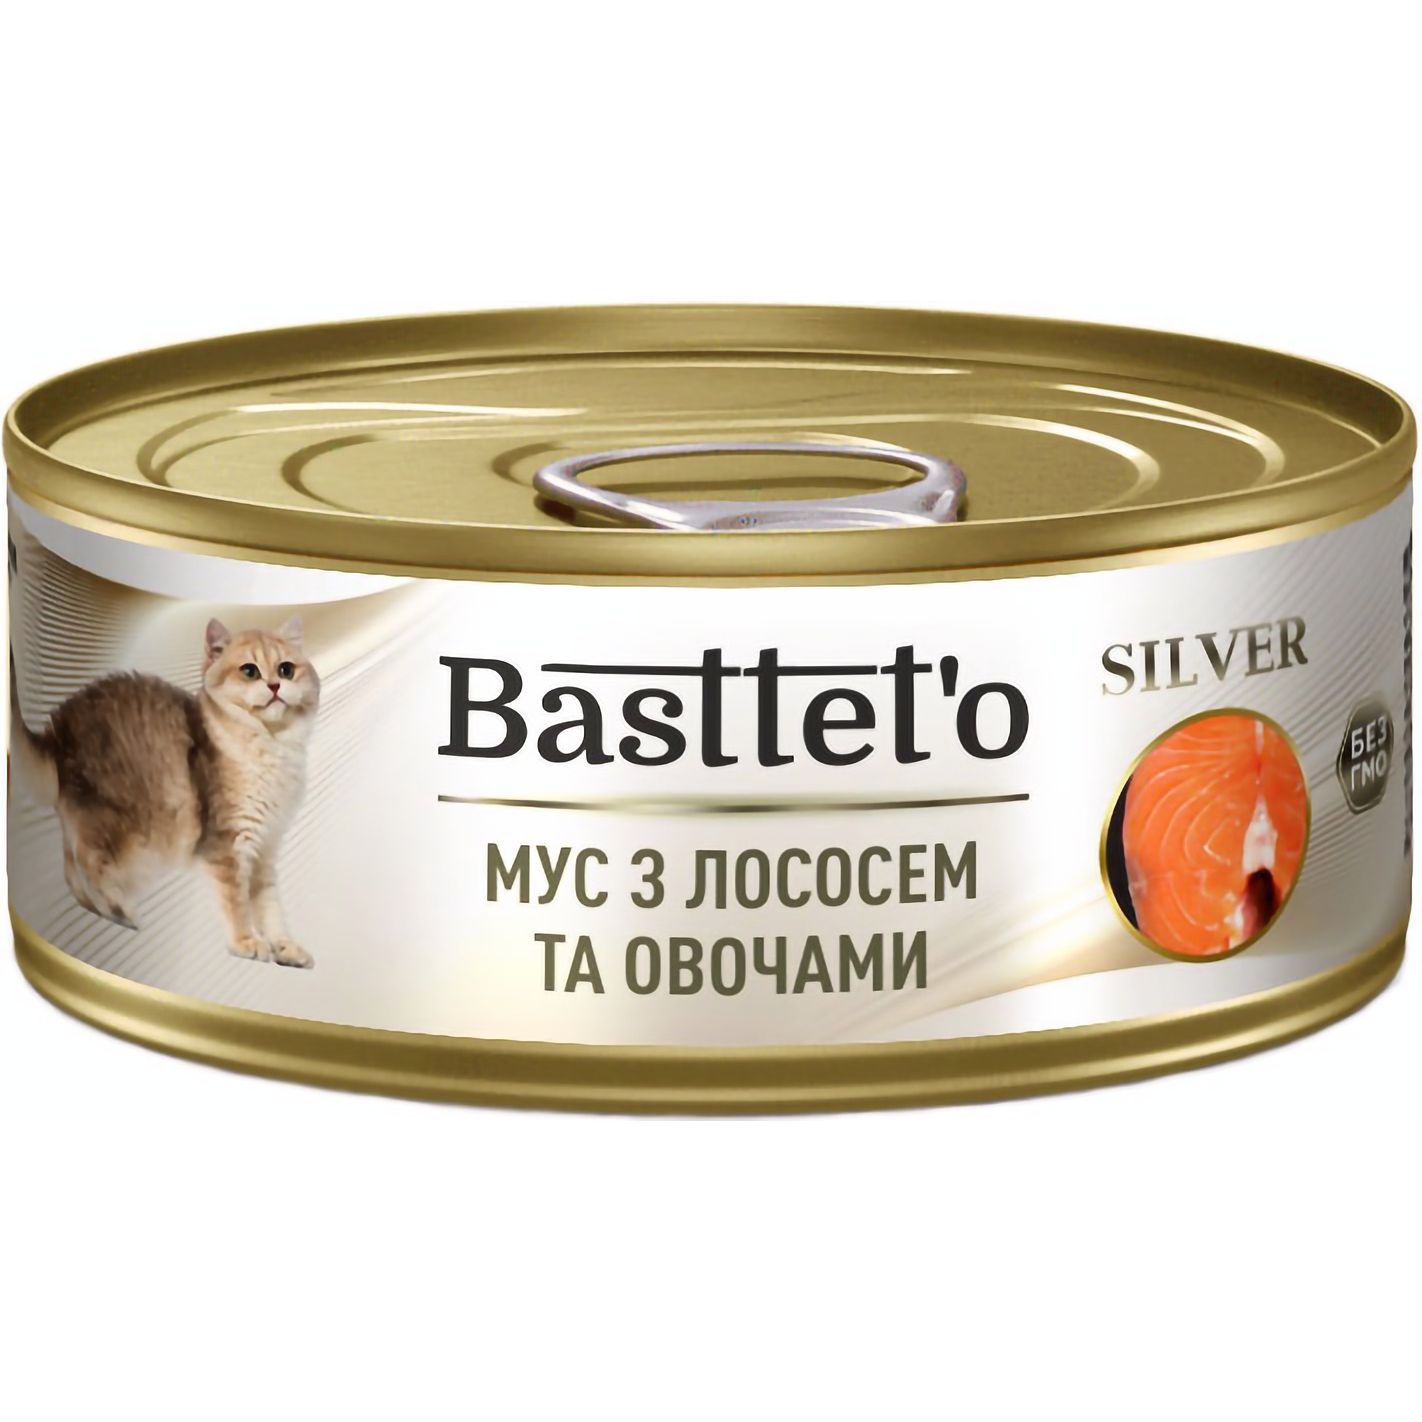 Вологий корм для котів Basttet'o Silver мус з лососем та овочами 85 г - фото 1